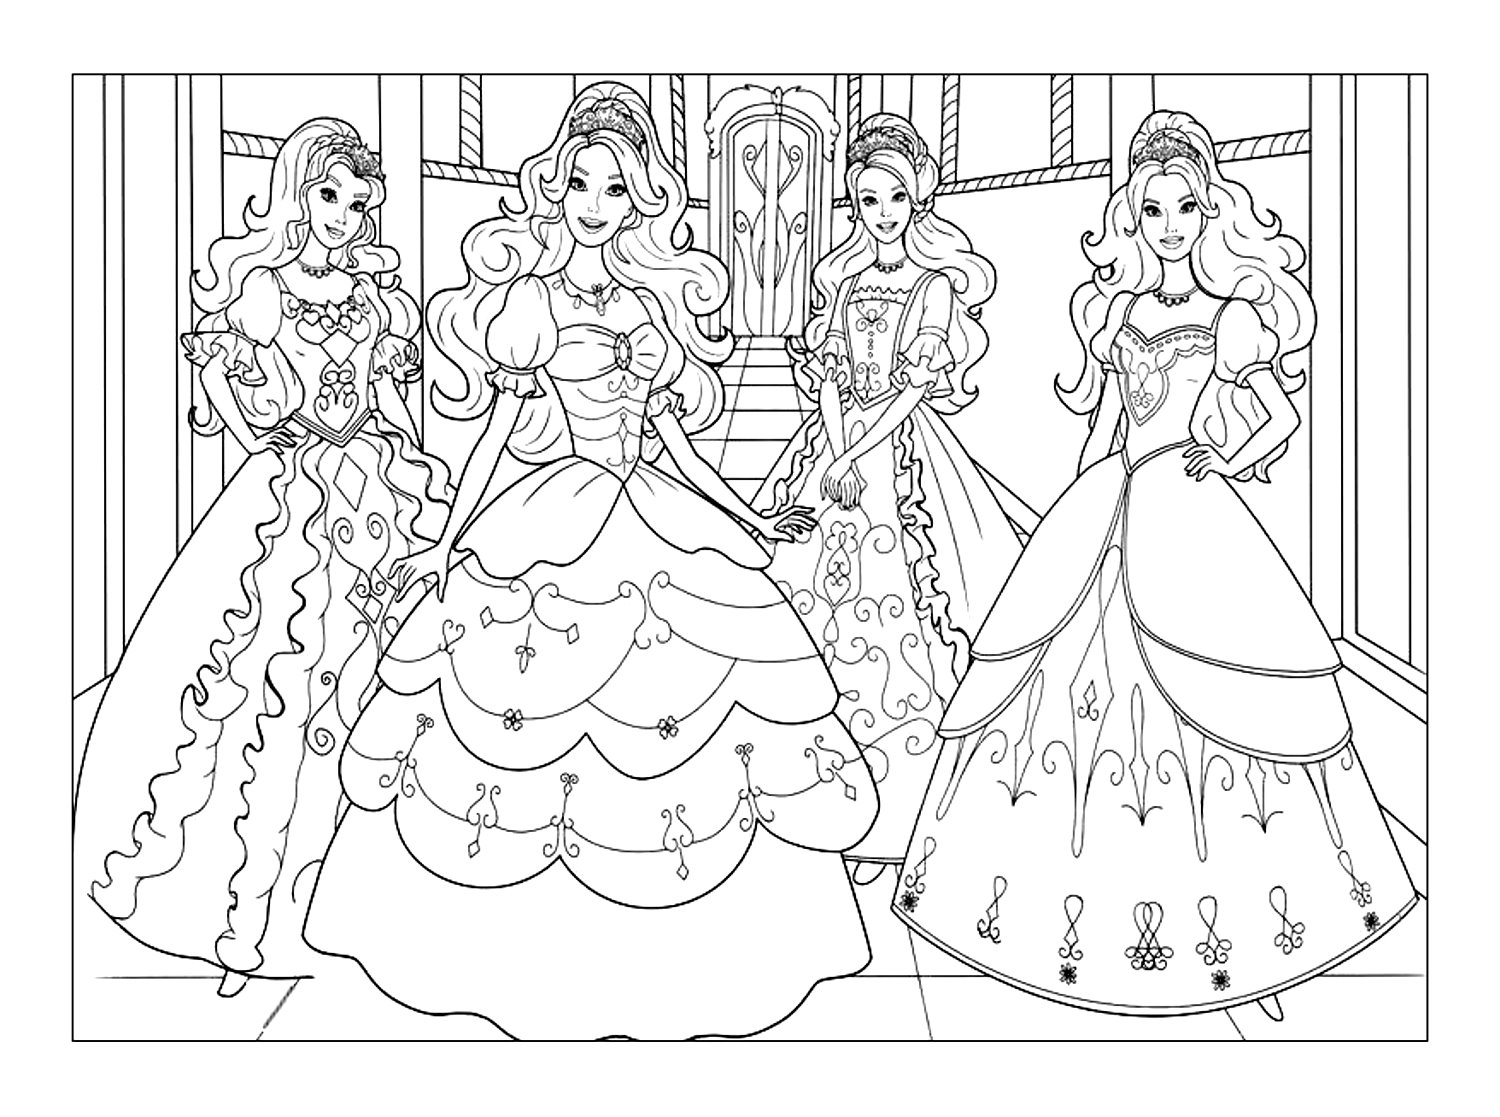 Jolies princesses Barbie. Quatre princesses Barbie vêtues de robes magnifiques. Un coloriage complexe qui vous fera revenir en enfance assurément